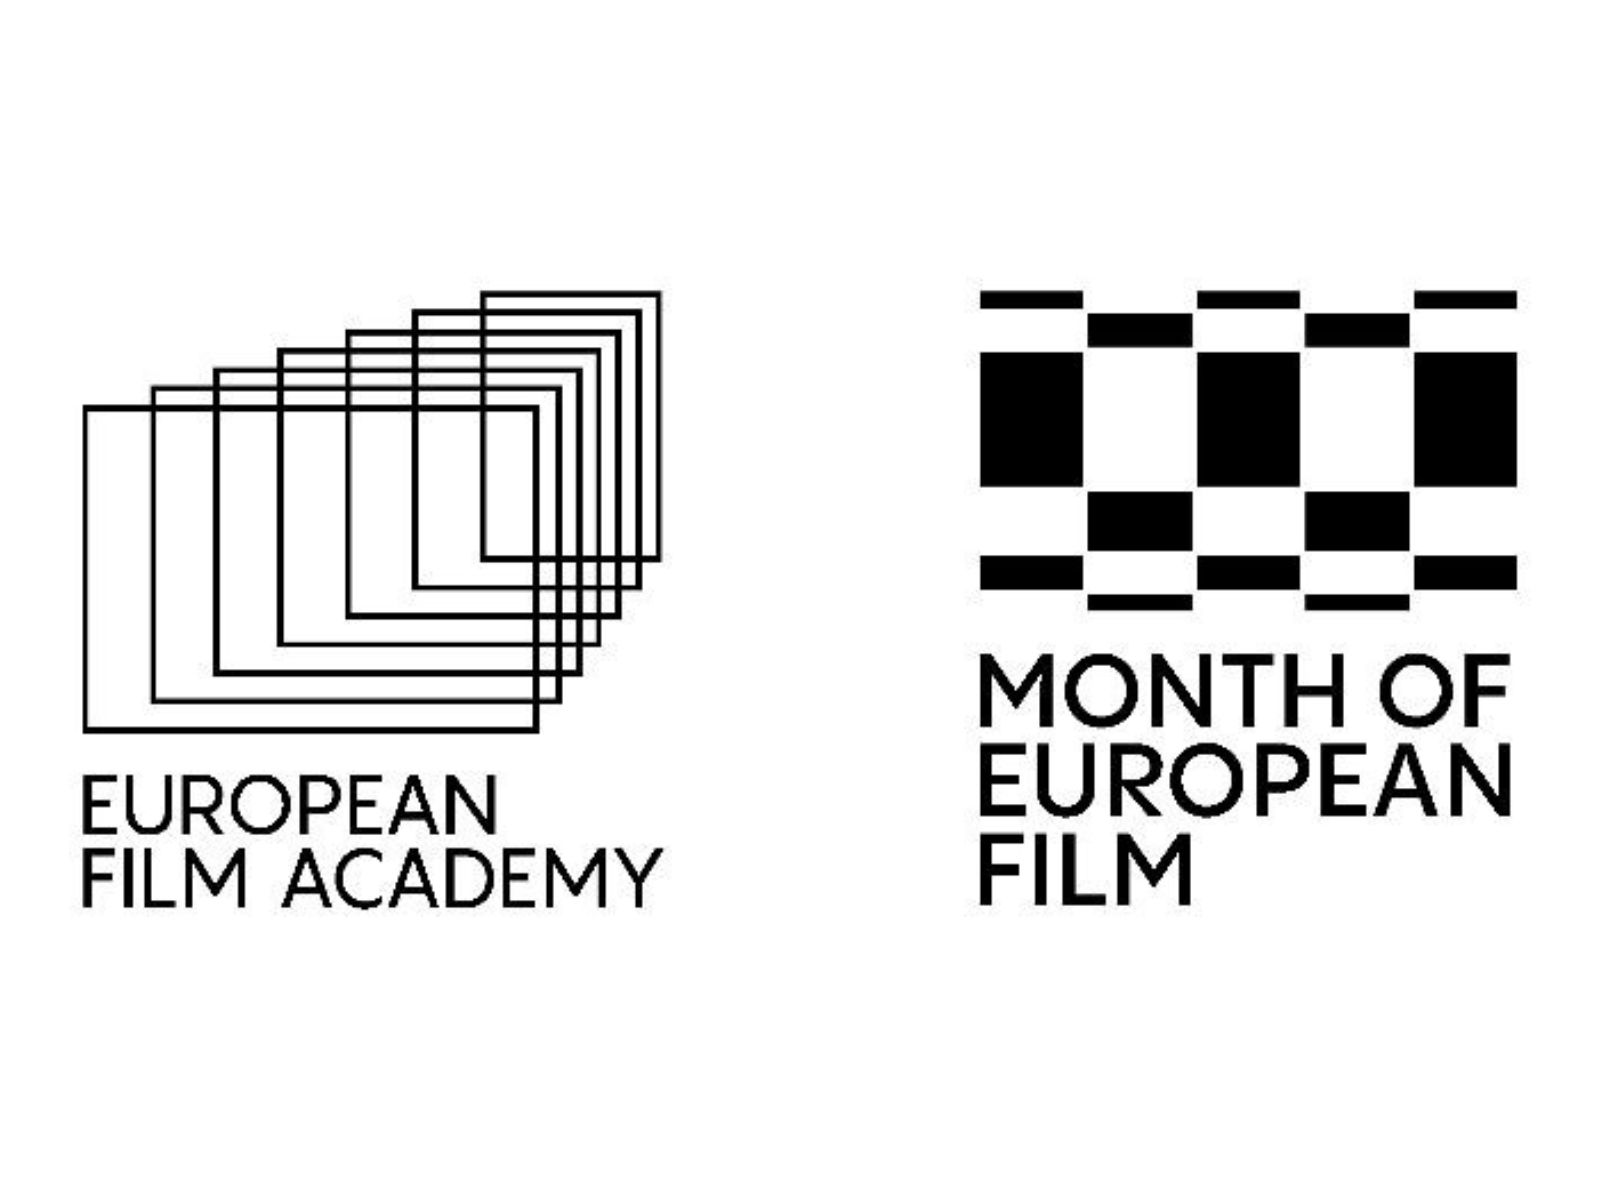 Inaugural Month of European Film hailed a success